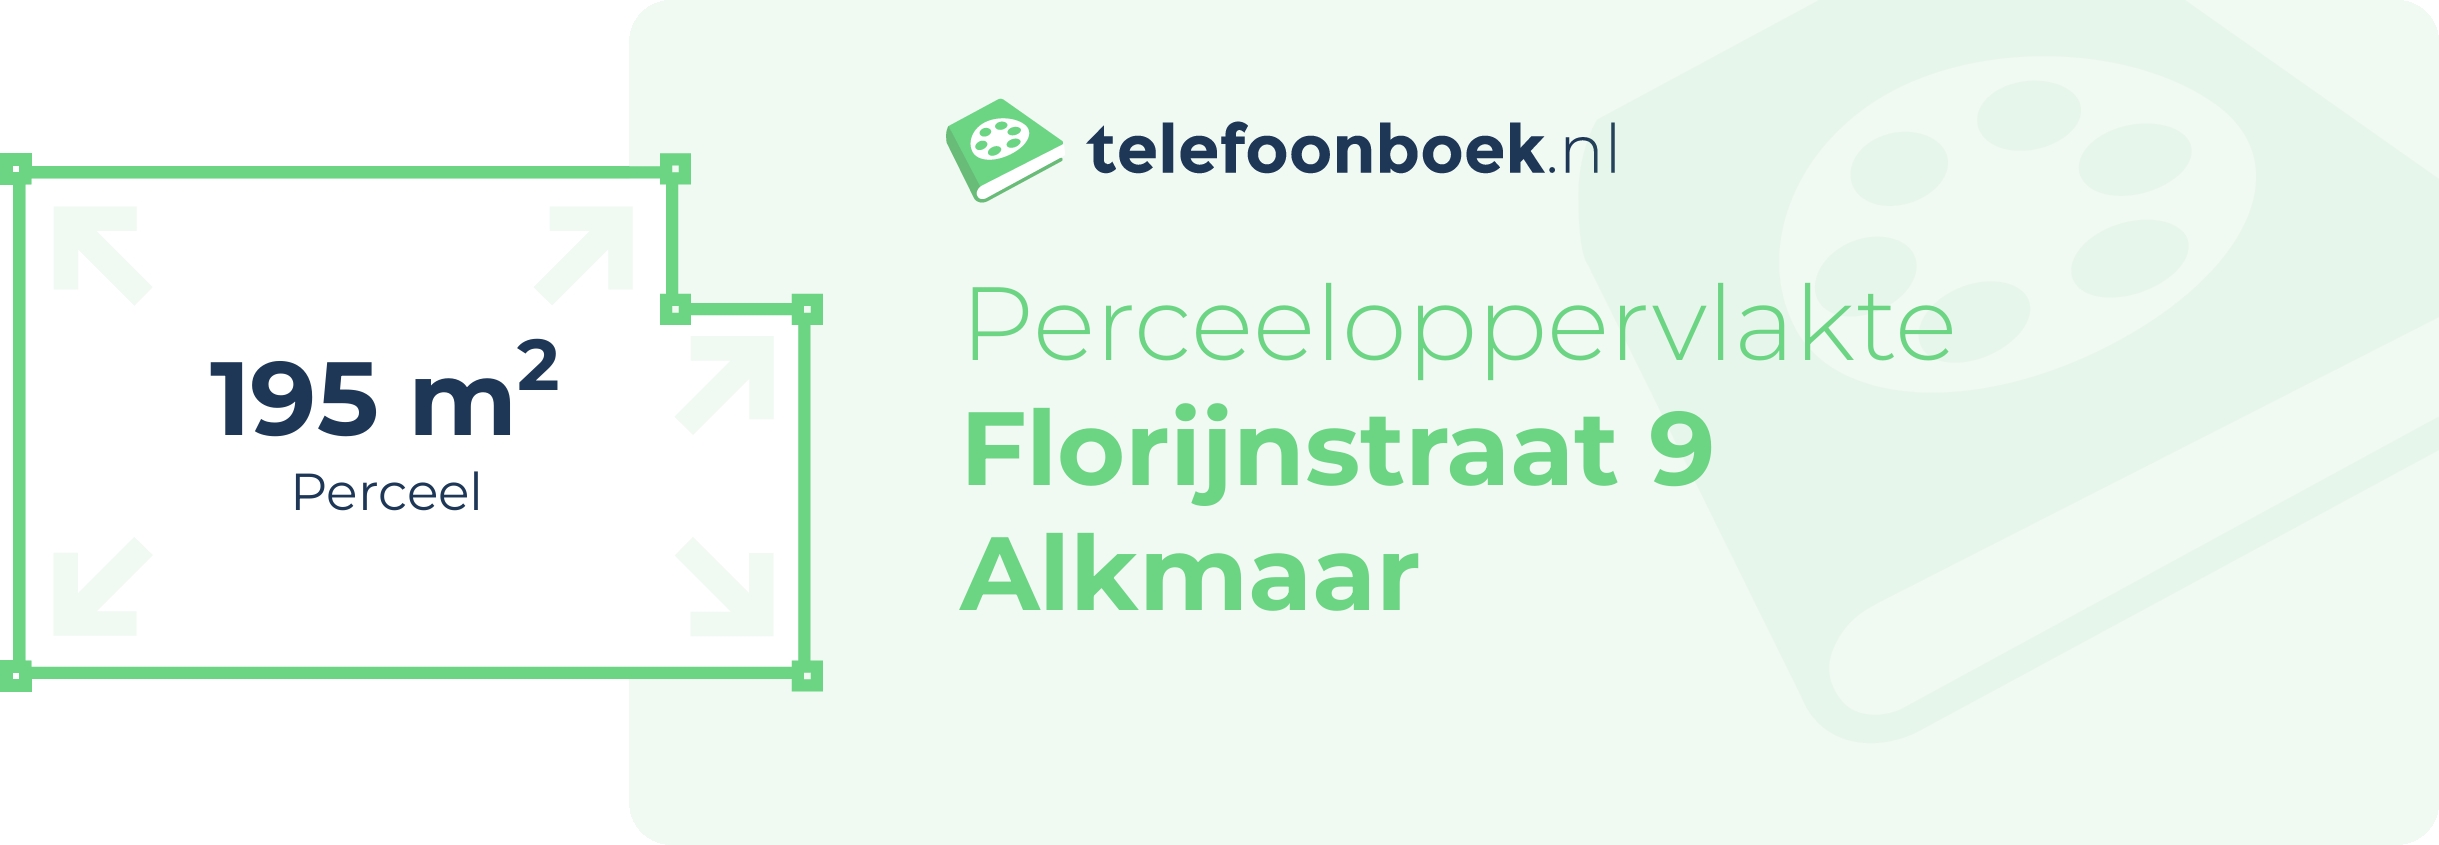 Perceeloppervlakte Florijnstraat 9 Alkmaar